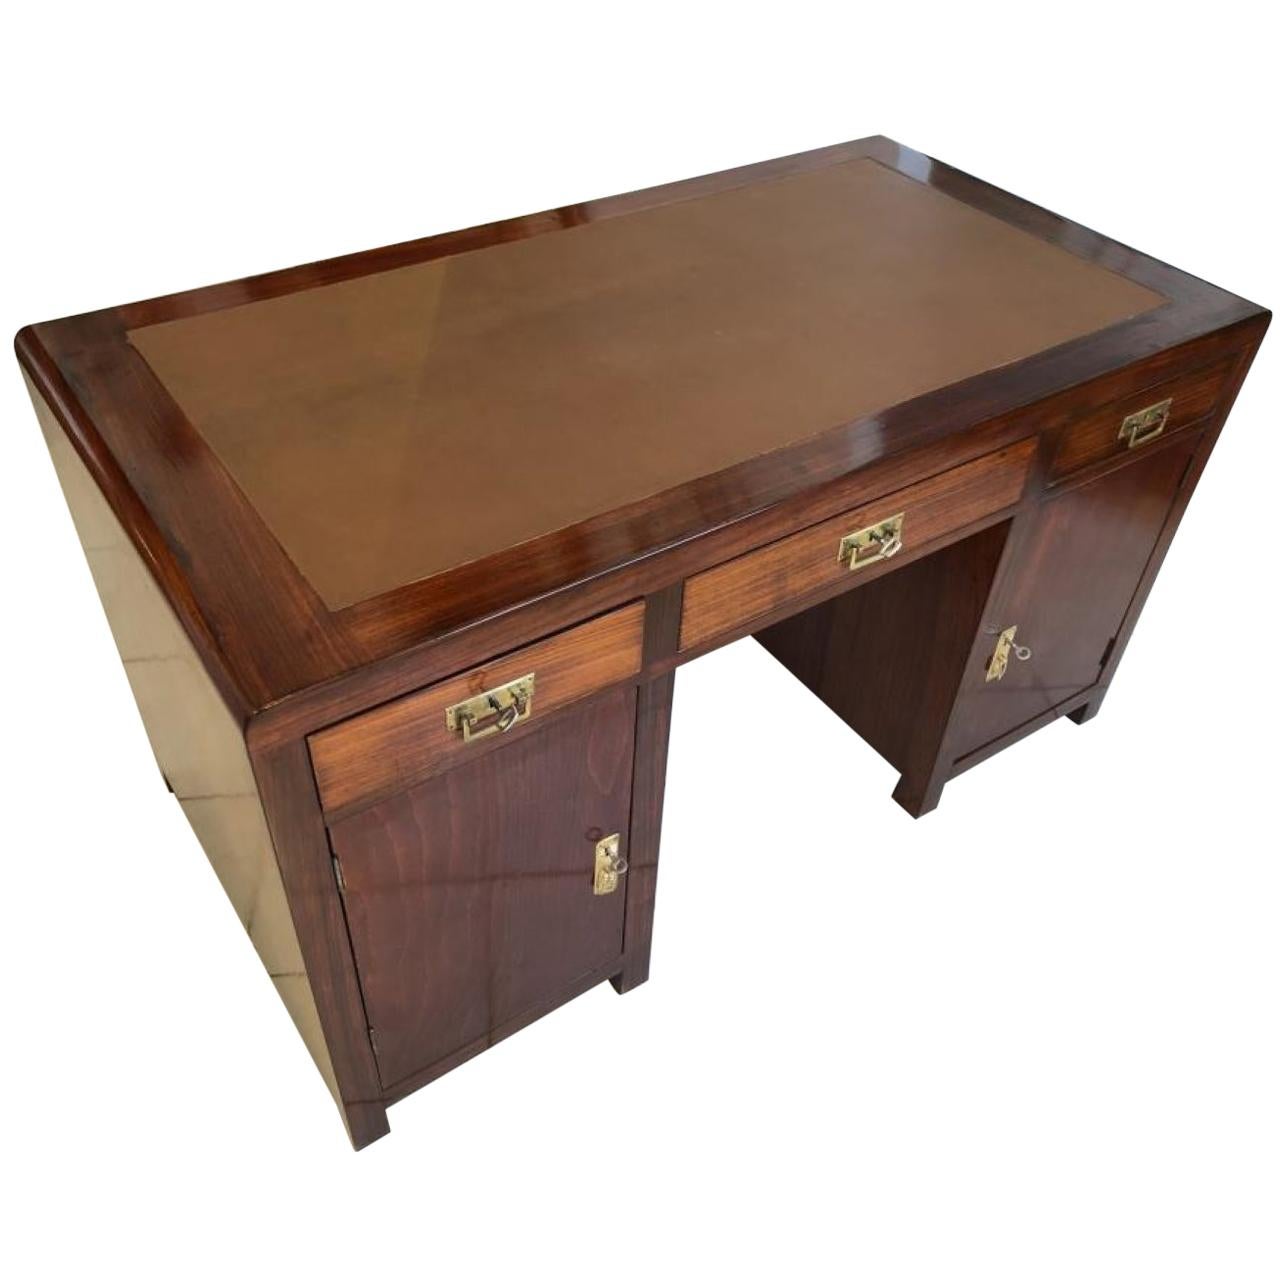 Small Original Art Nouveau Desk Secretary Made of Cherrywood For Sale